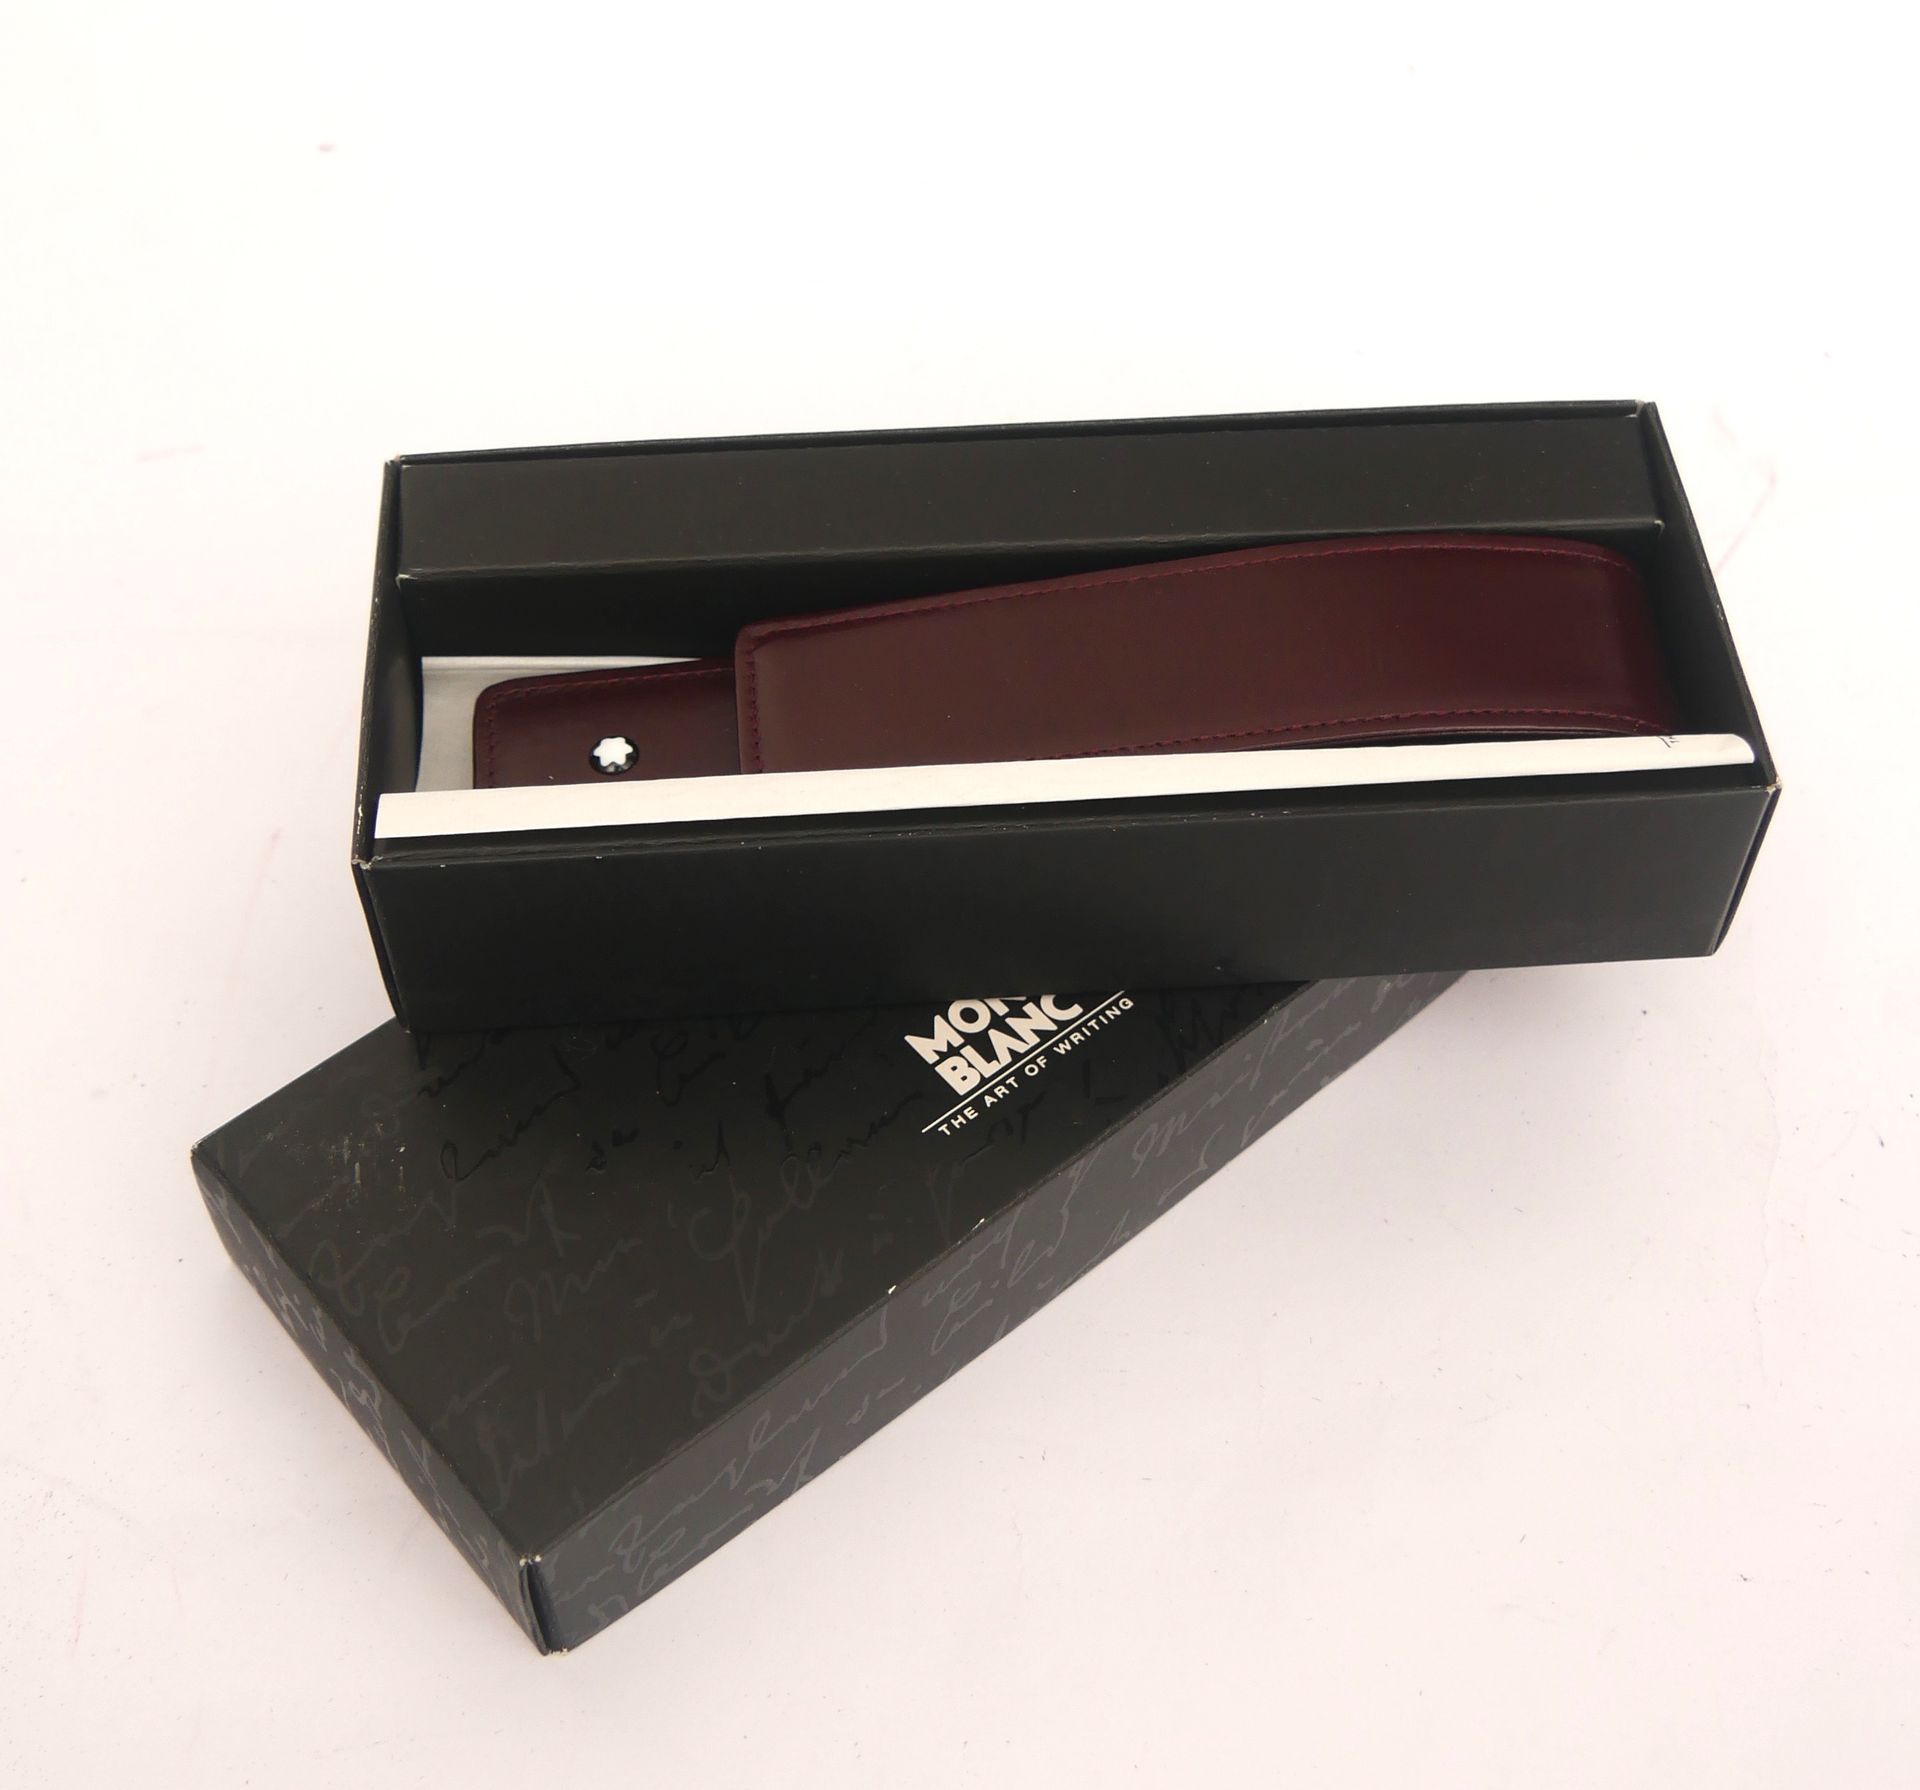 Null 蒙特布朗

波尔多棕色皮笔盒

尺寸：16 x 3,5 cm. 6 1/4 x 1,5 in. 约。

盒子



状况非常好